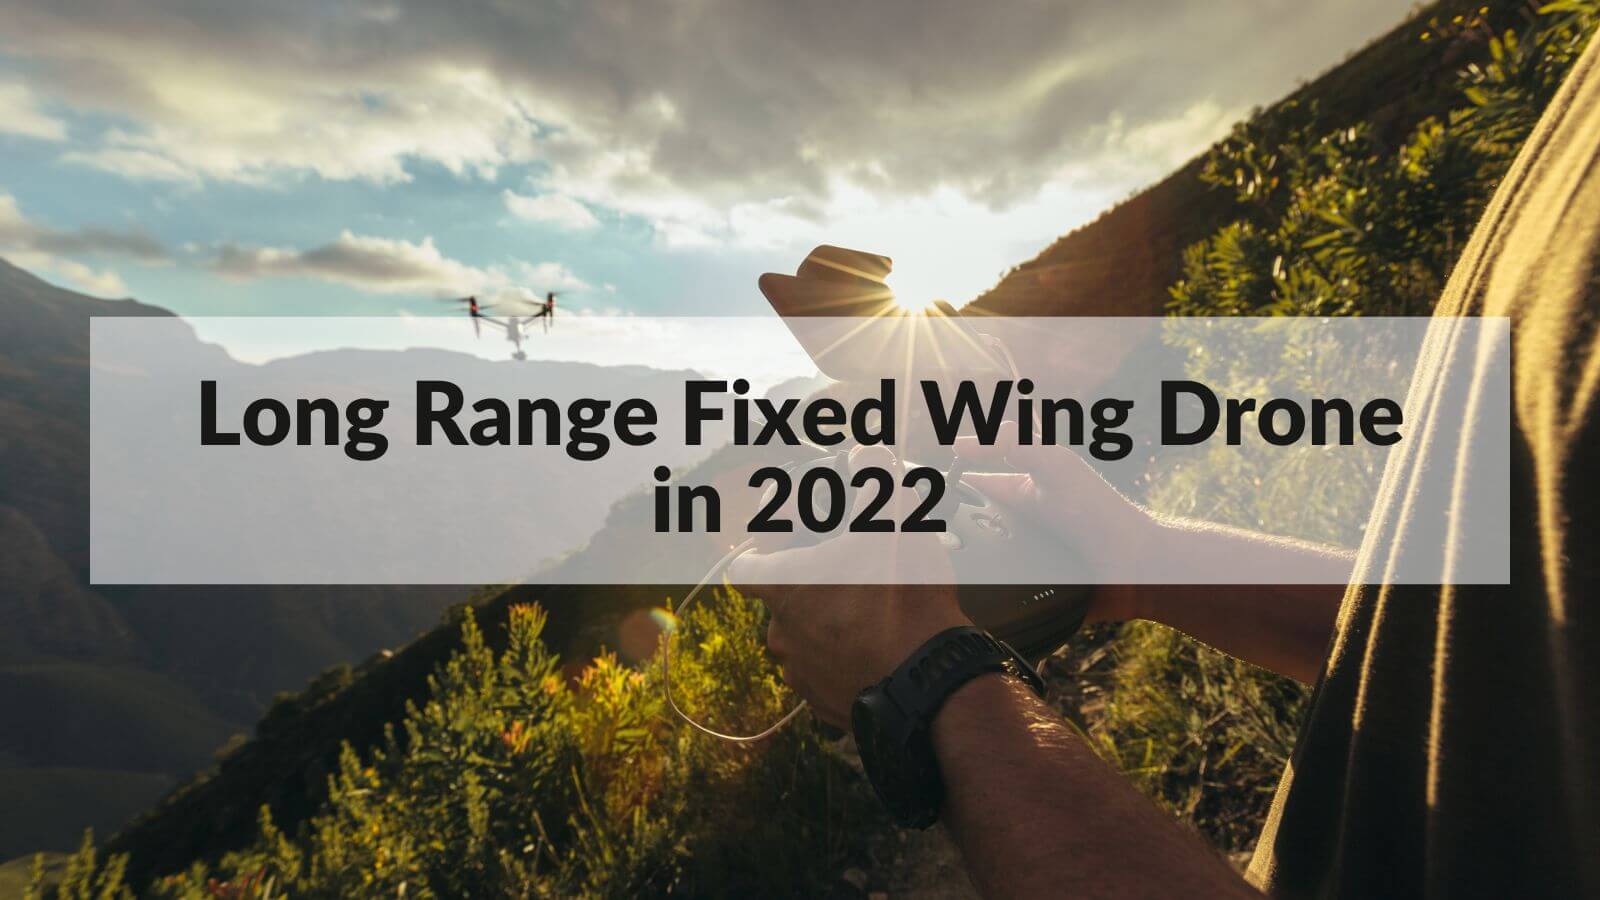 Long Range Fixed Wing Drone in 2022